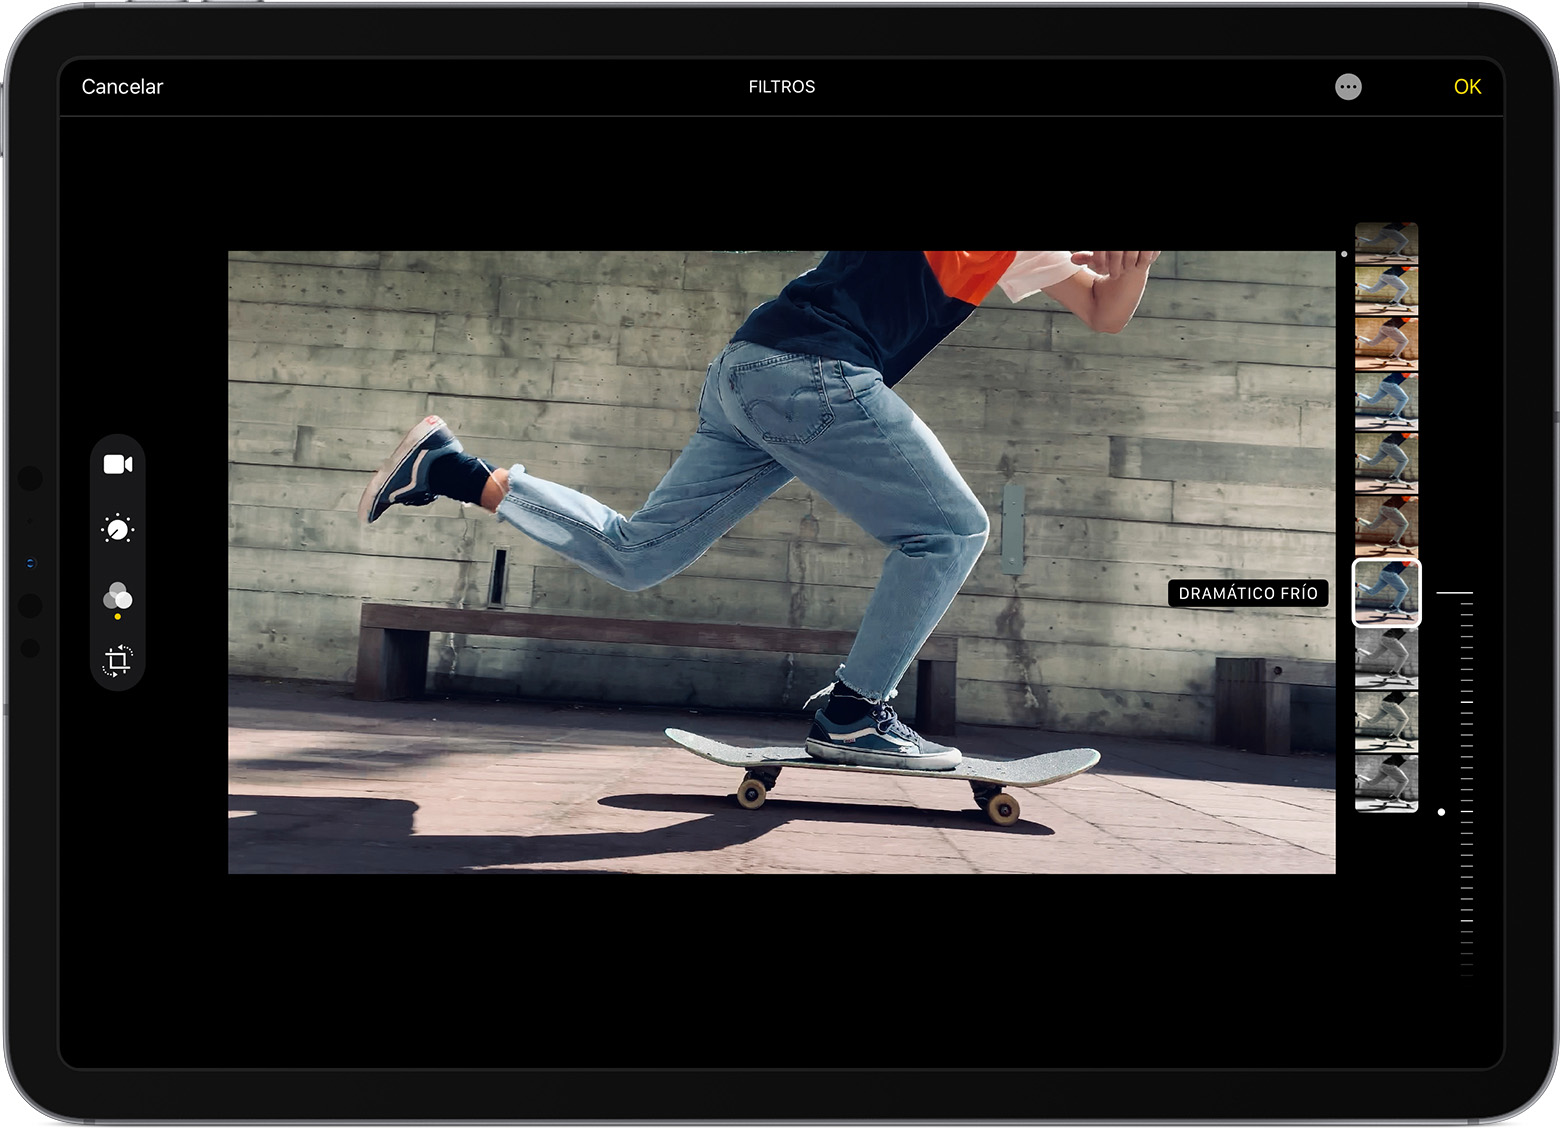 iPad que muestra un vídeo con un filtro aplicado